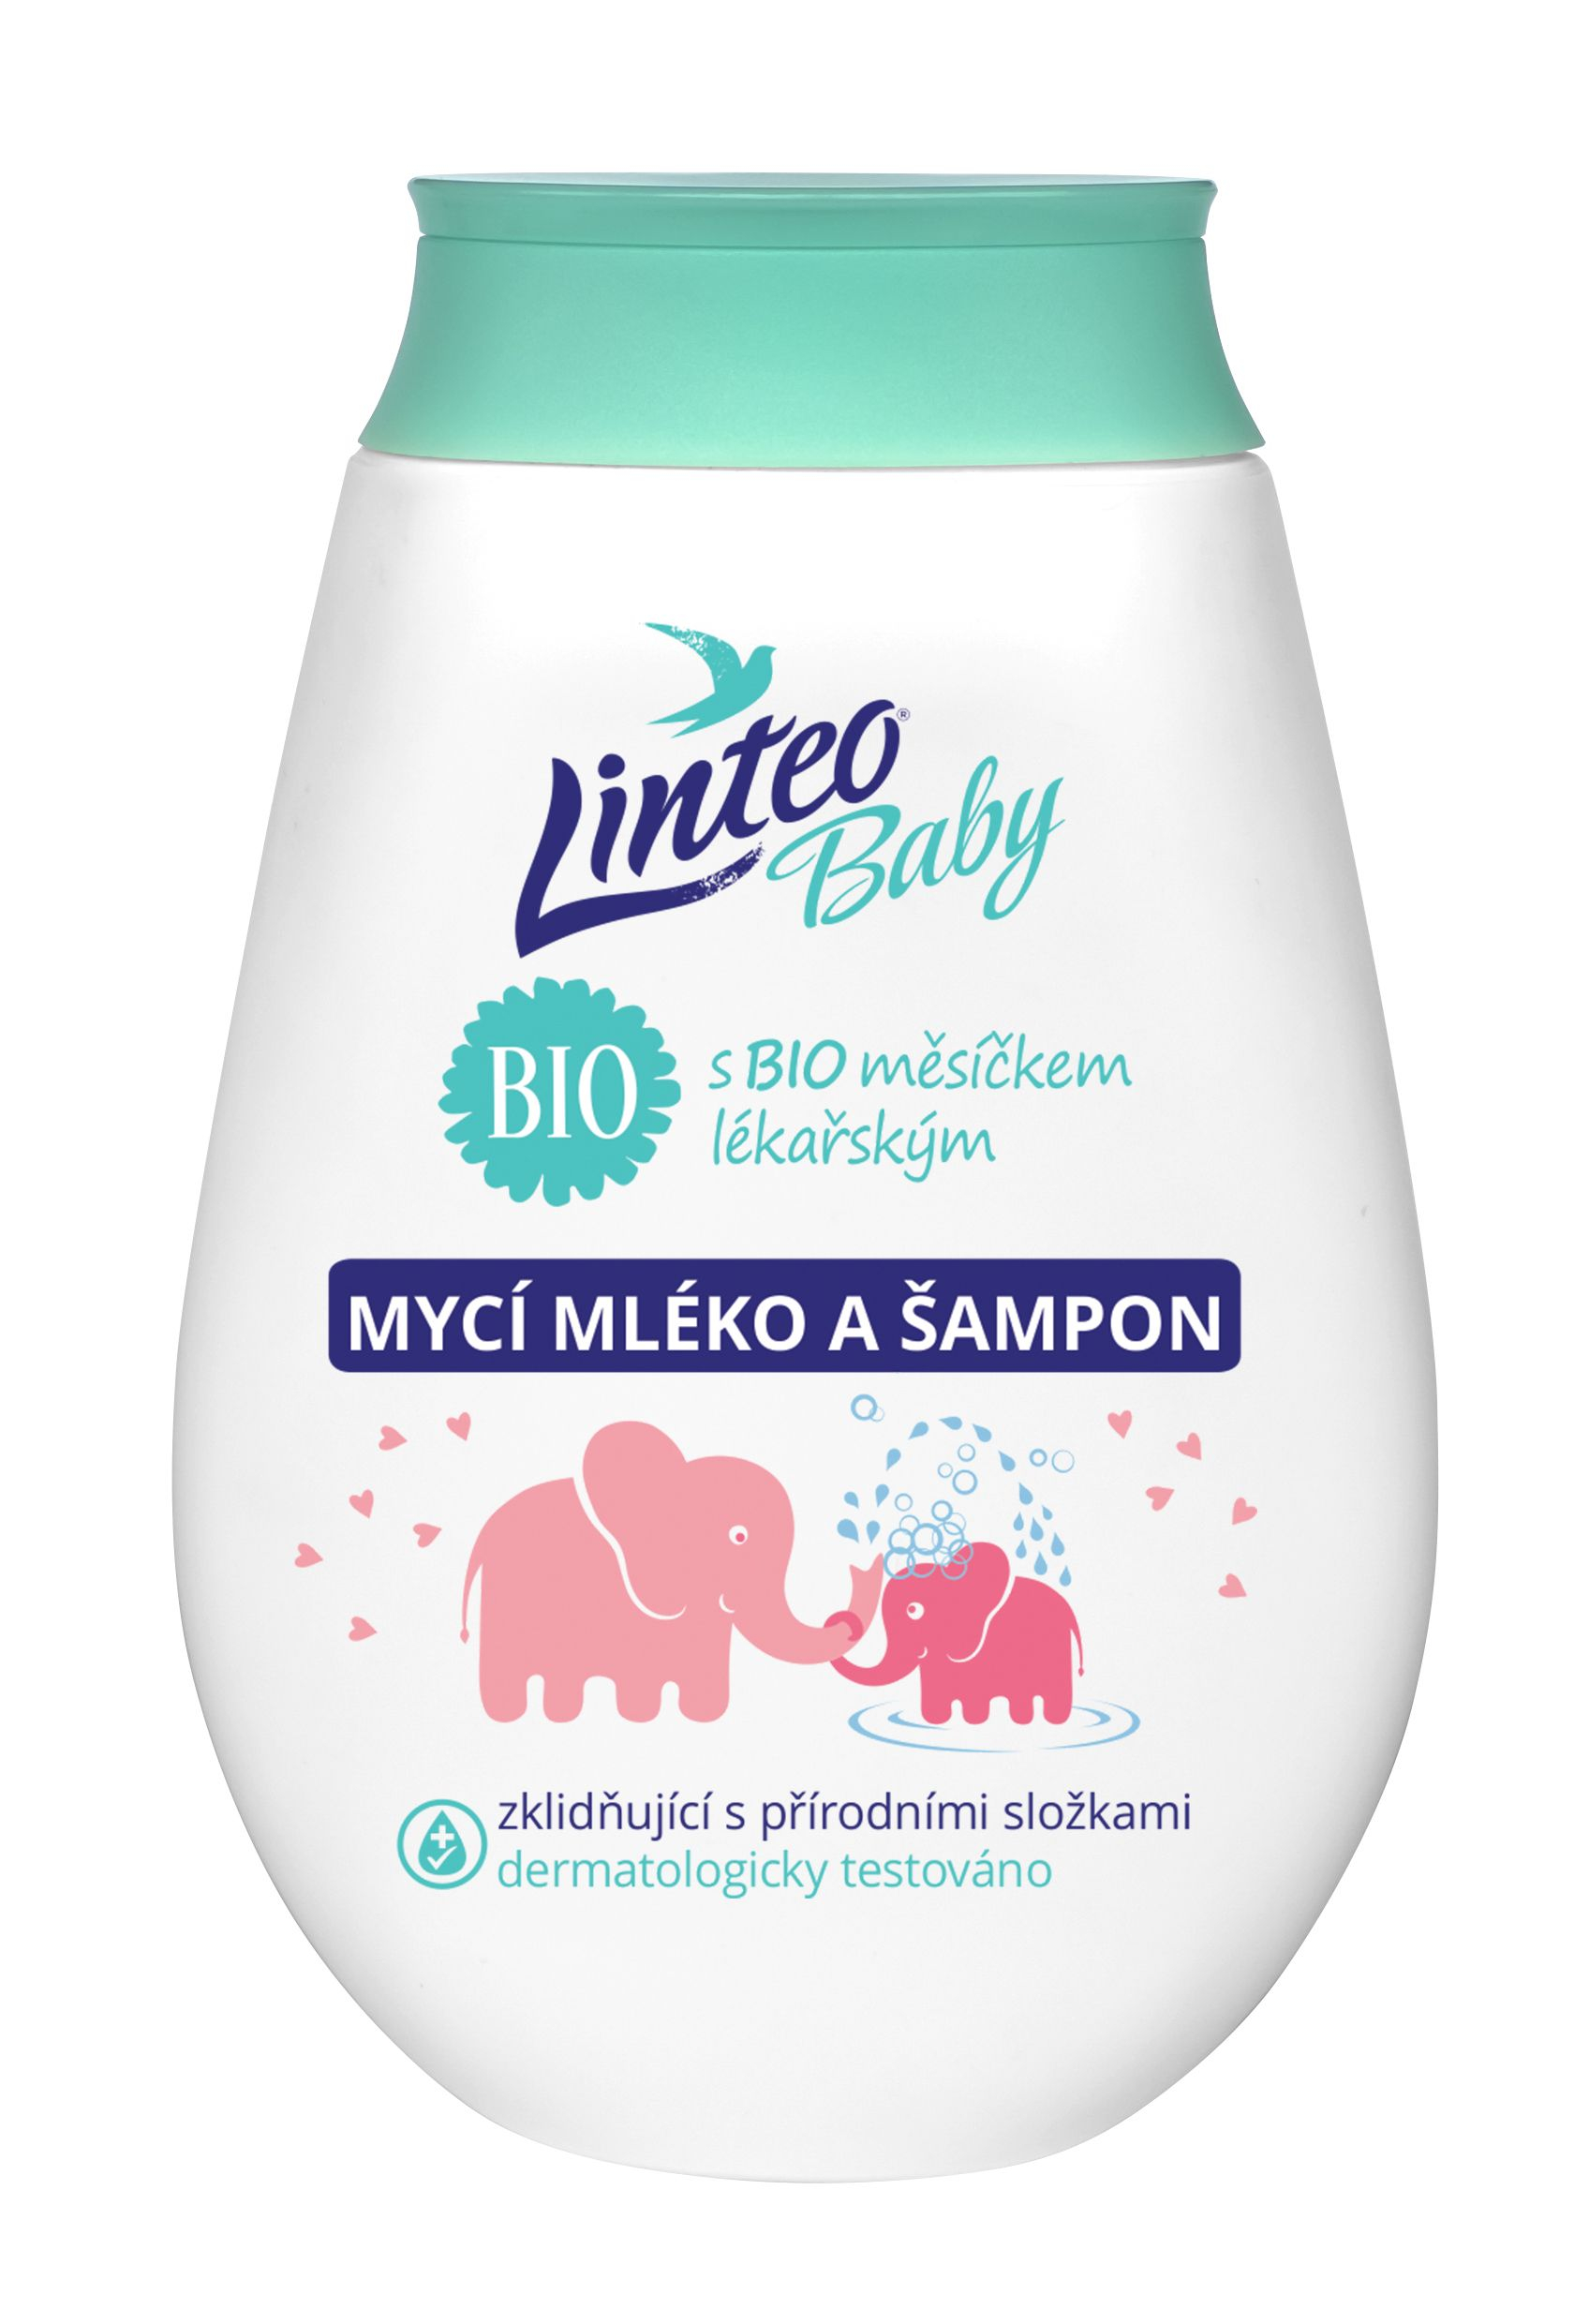 Linteo Baby Dětské mycí mléko a šampon s BIO měsíčkem lékařským 250 ml Linteo